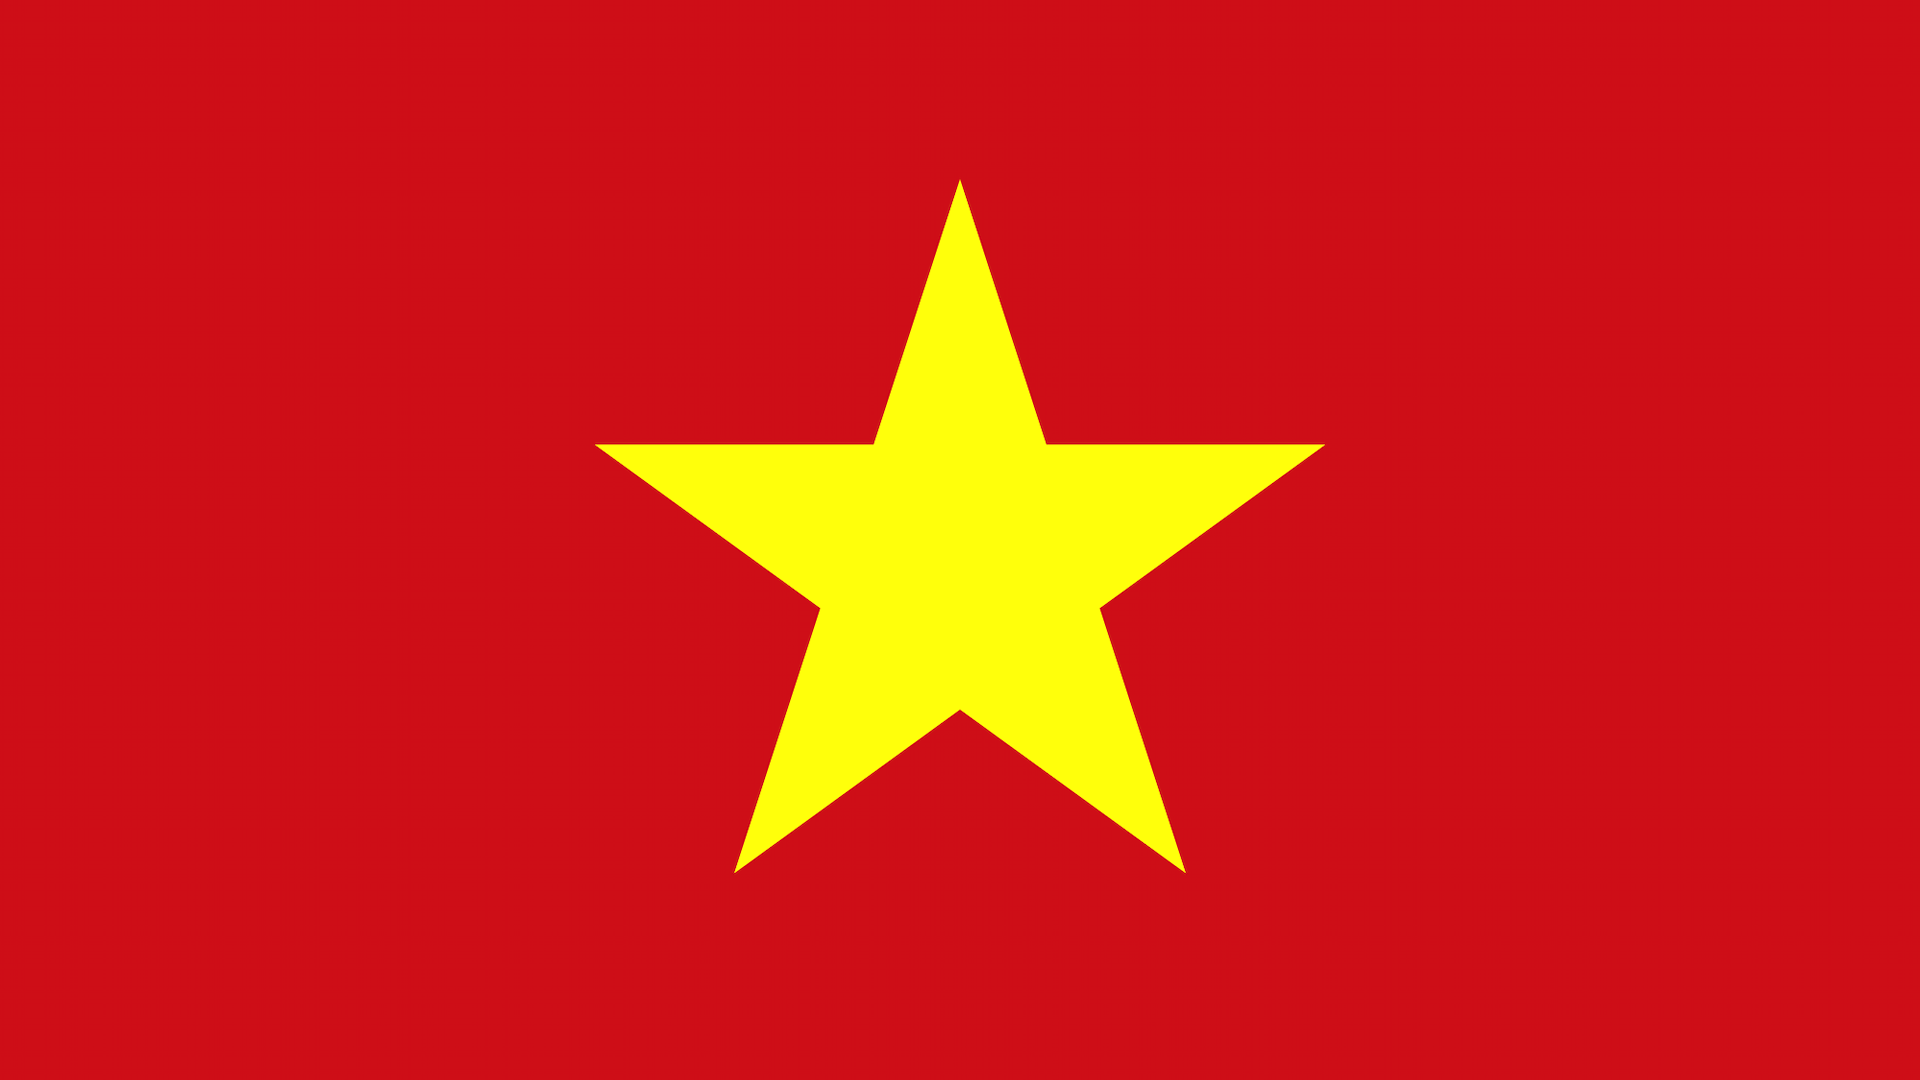 Asia flag quiz 1